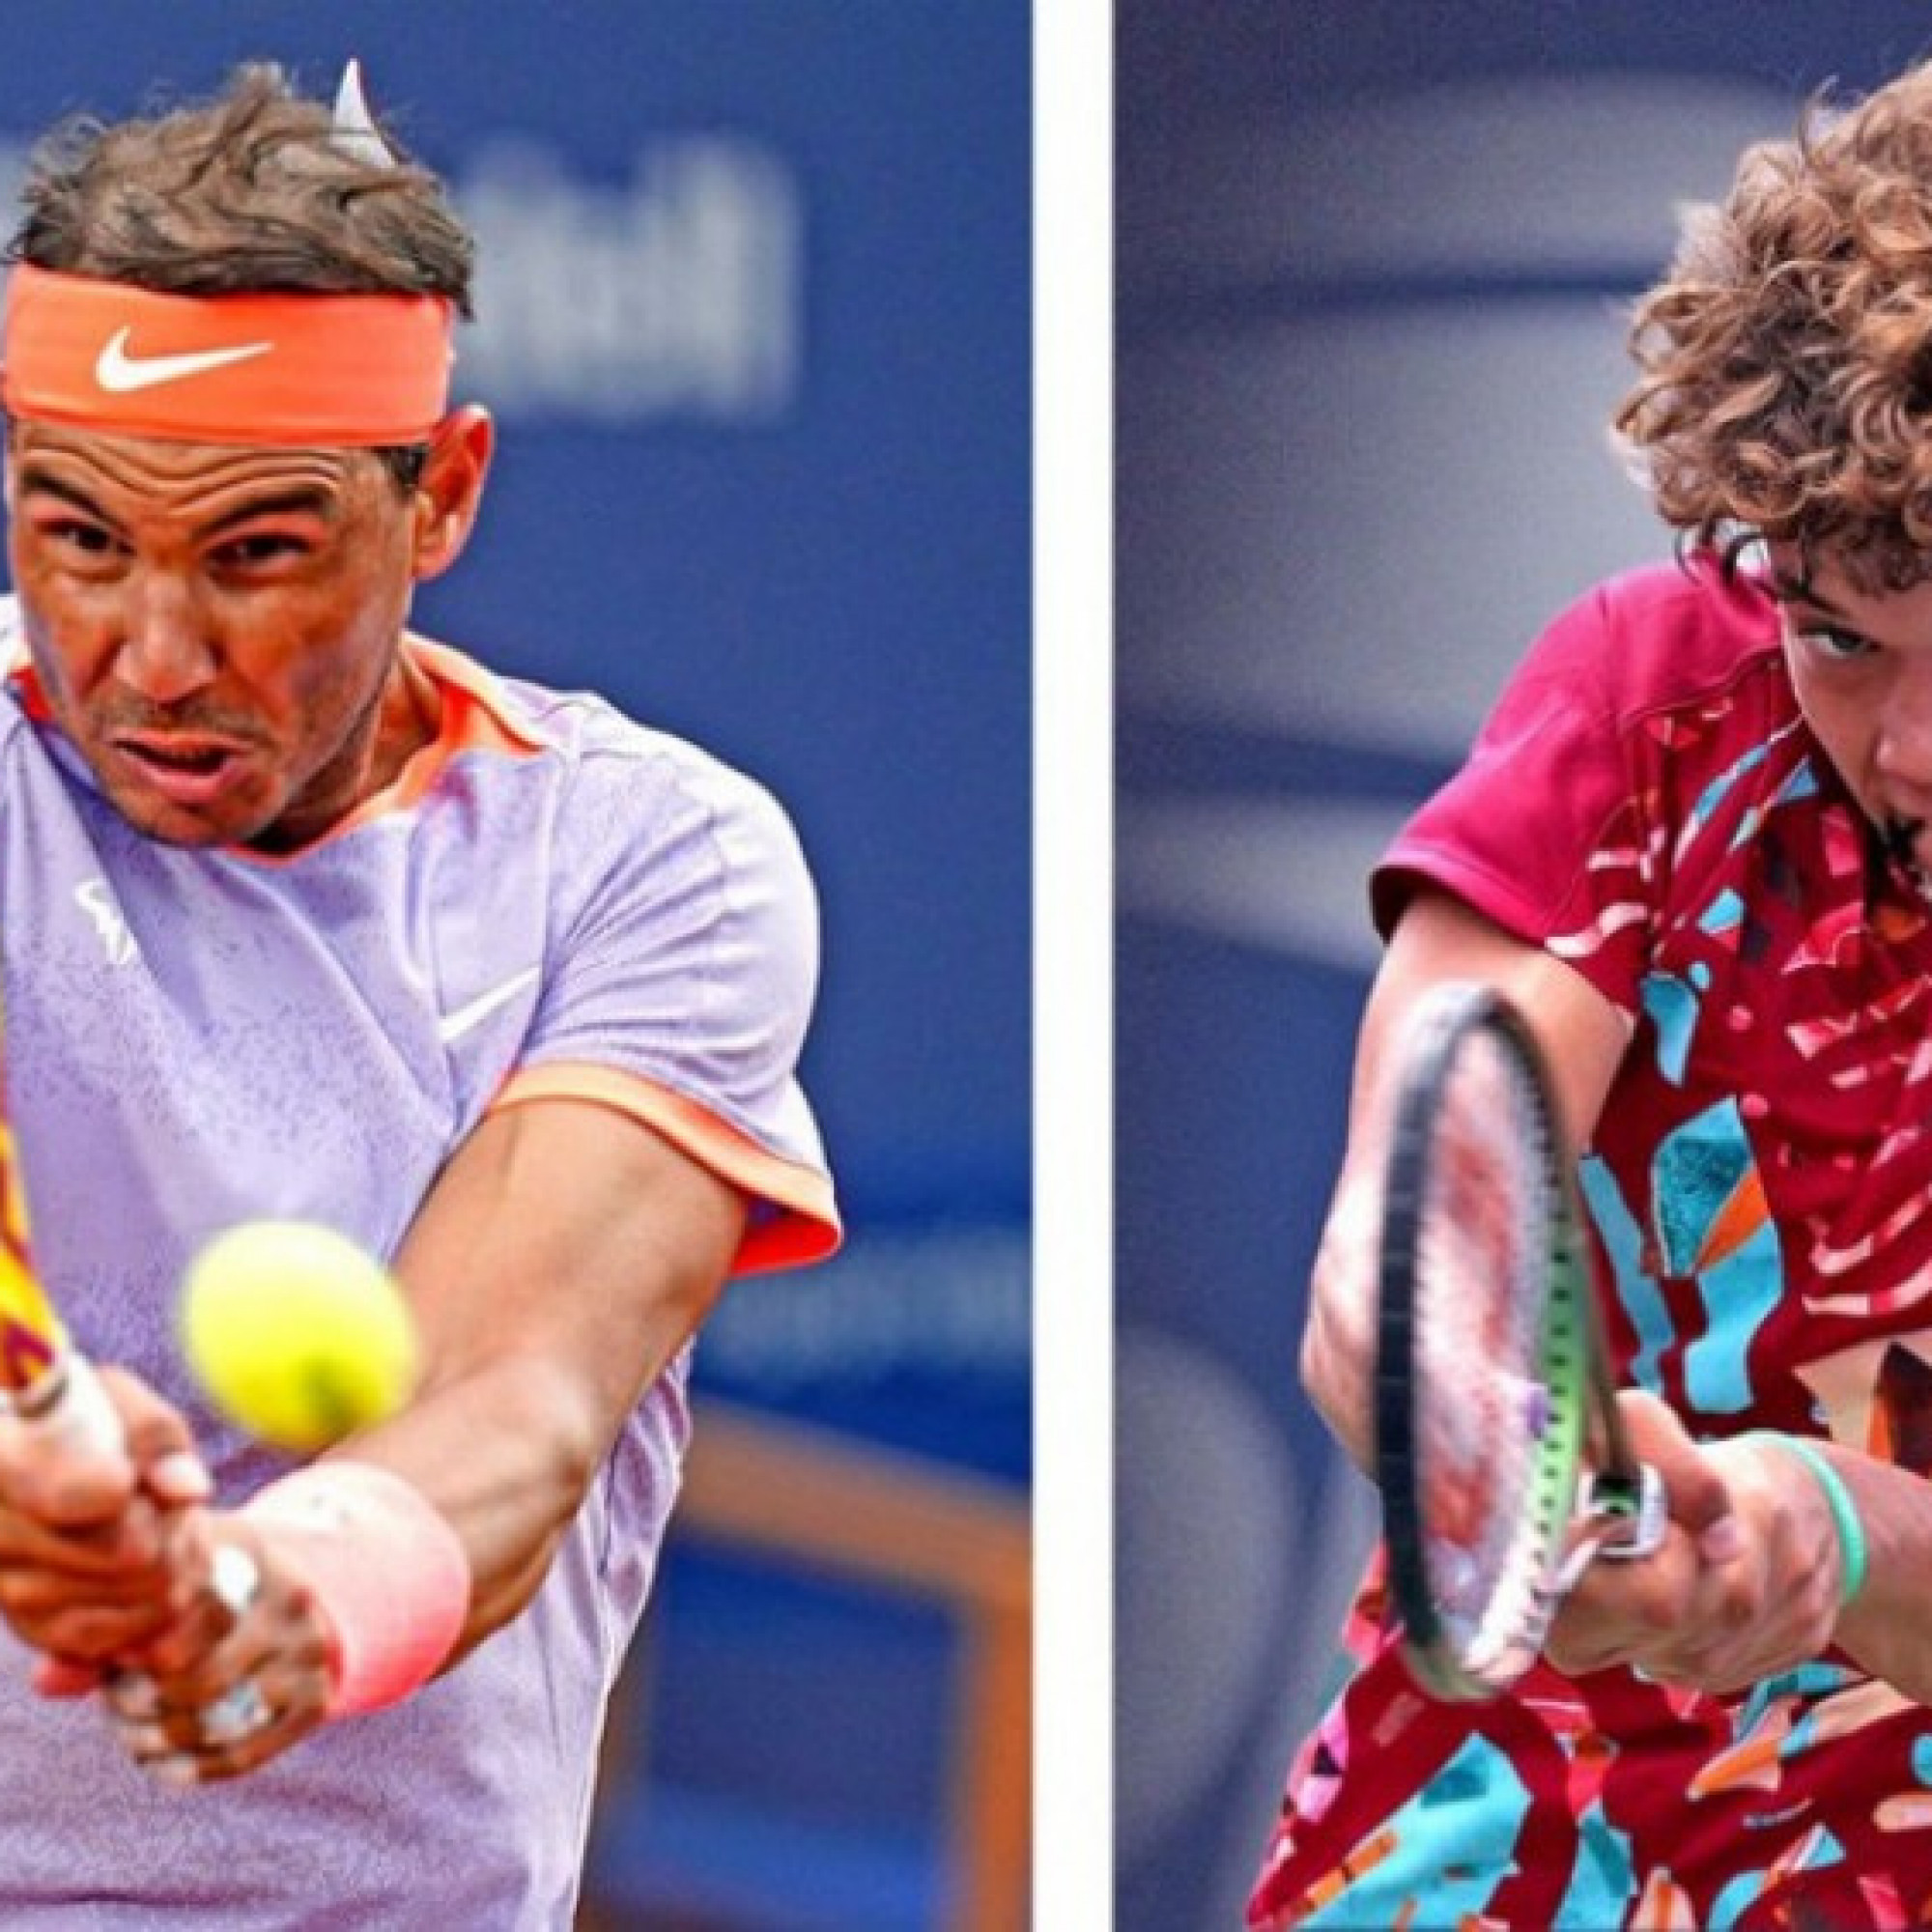  - Trực tiếp tennis Nadal - Blanch: Nadal rất nhanh chóng giành break (Madrid Open)